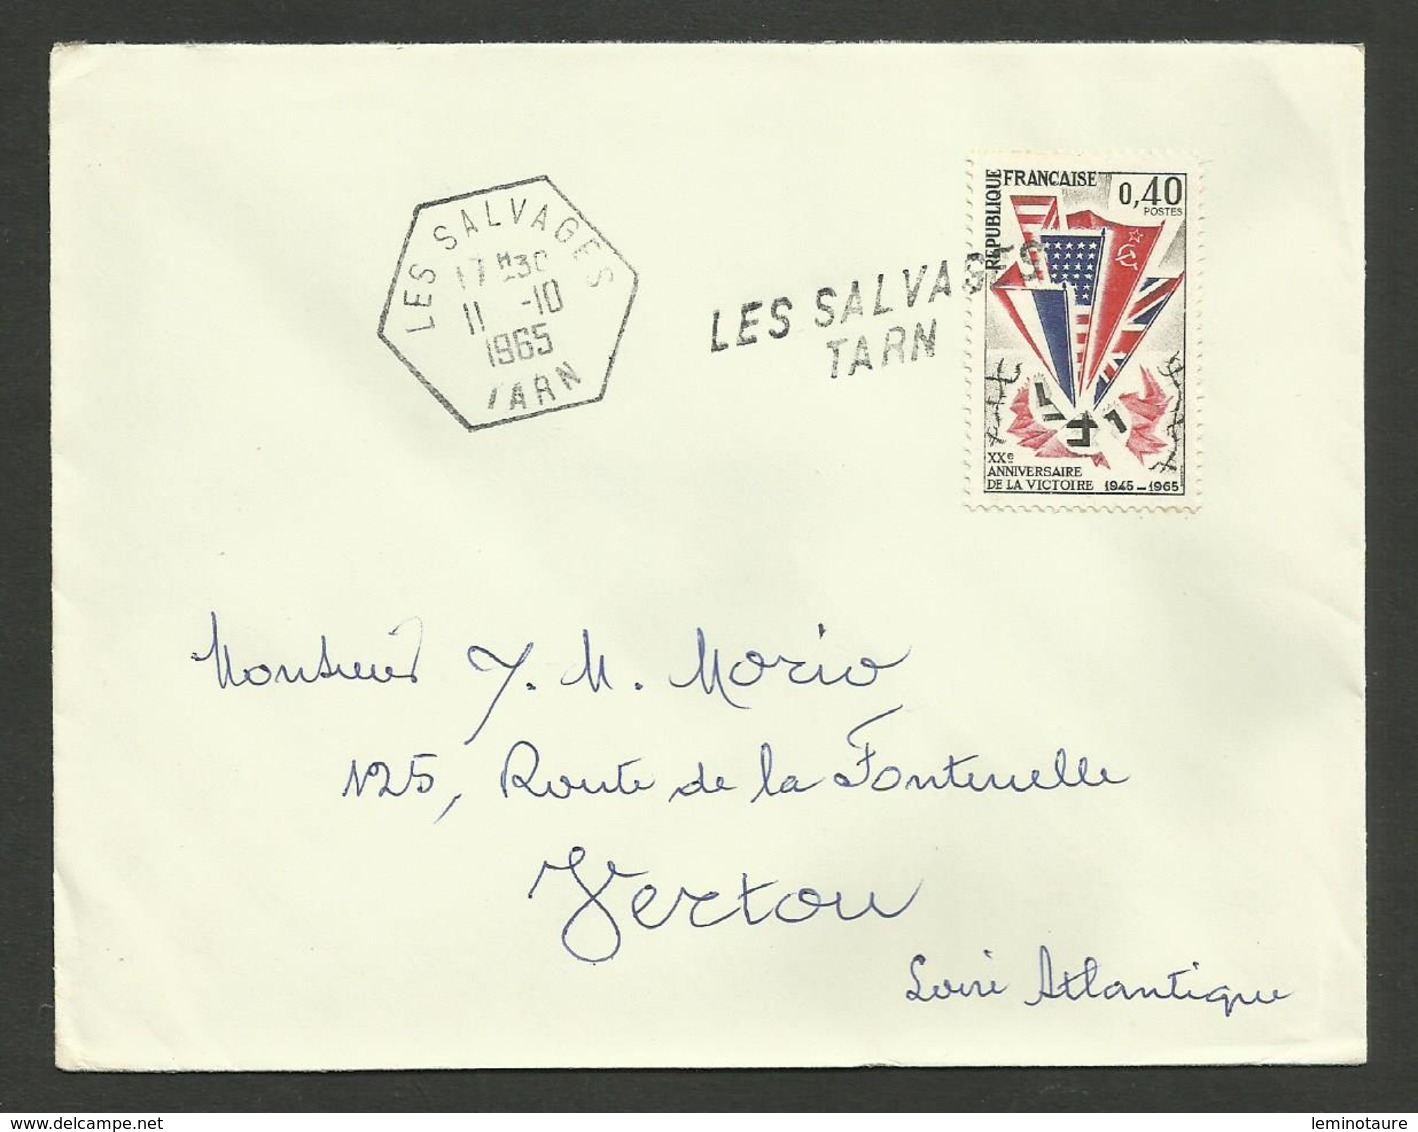 TARN / Griffe & Cachet Recette Auxilliaire Rurale LES SALVAGES / Enveloppe 1965 - Cachets Manuels